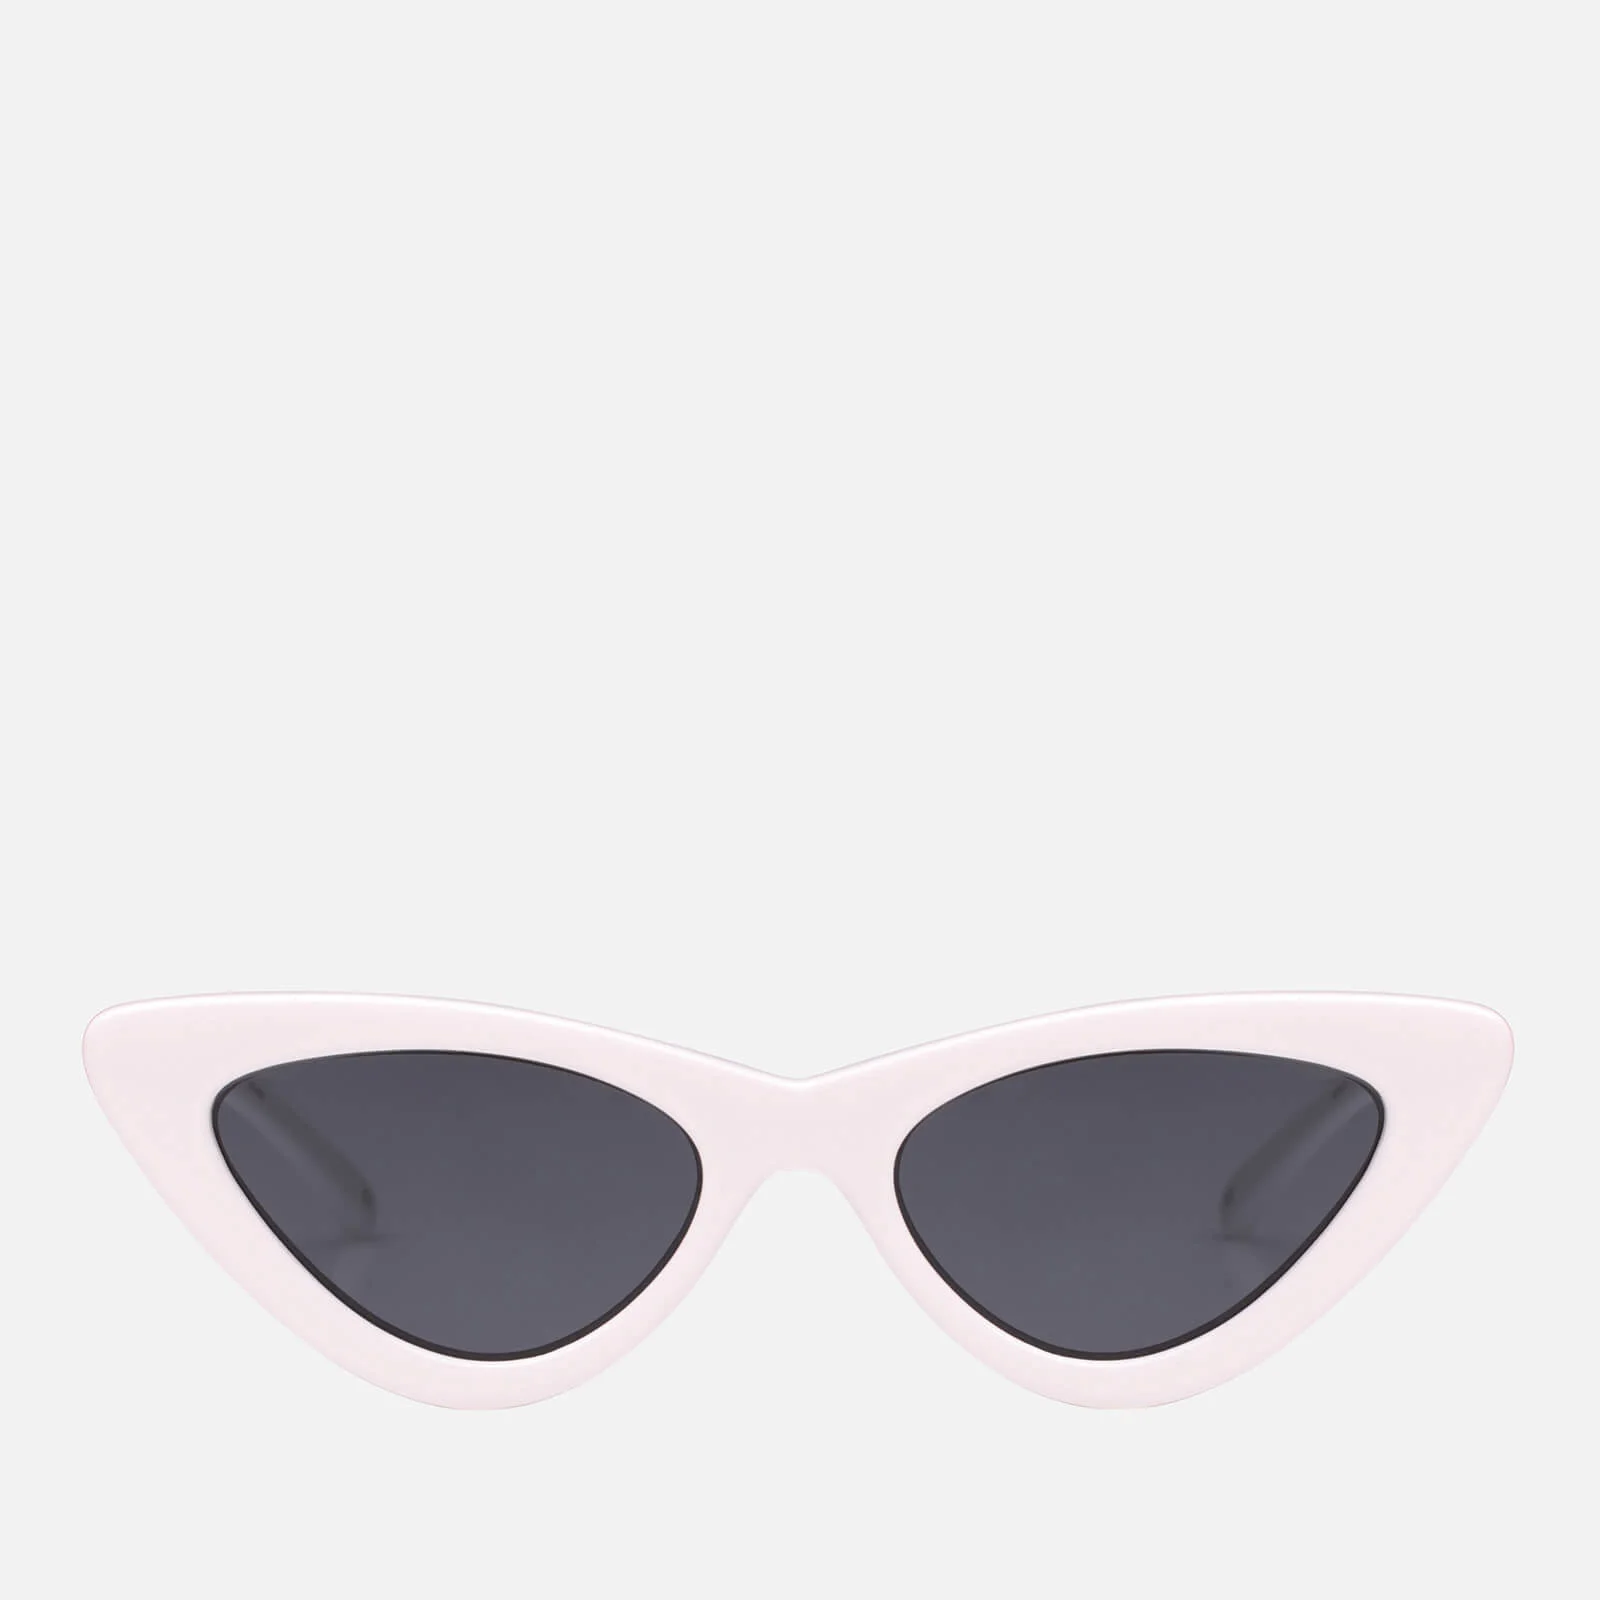 Le Specs Women's The Last Lolita Sunglasses - White Image 1